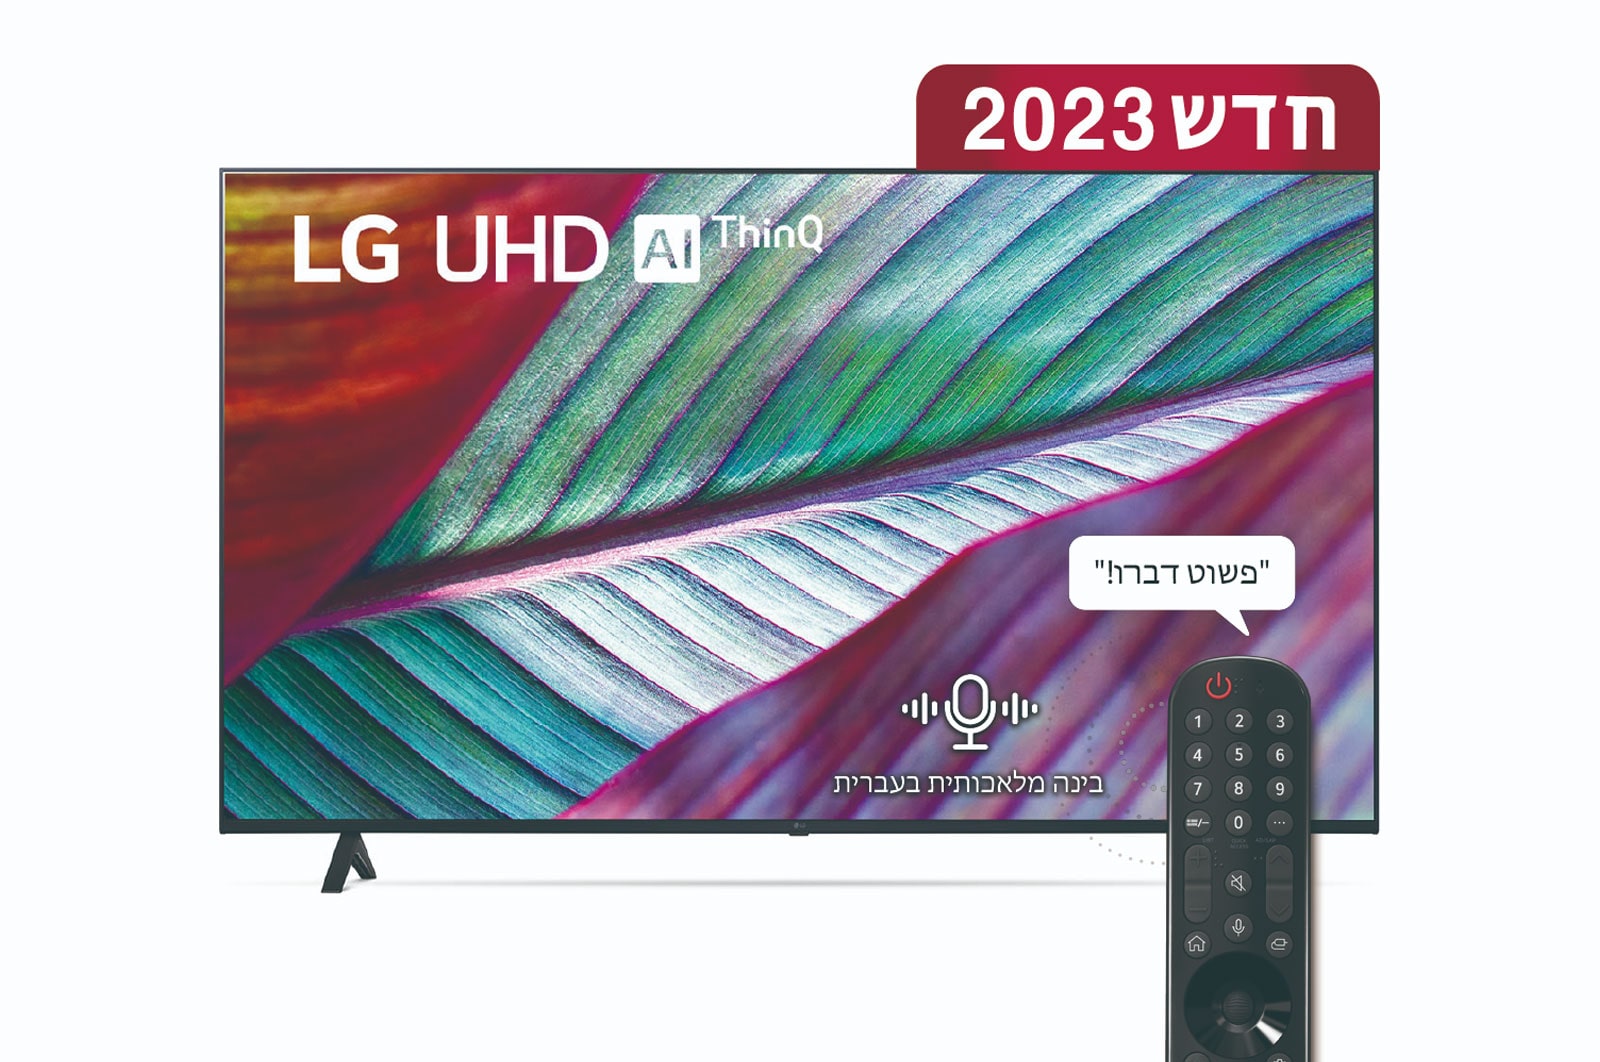 LG טלוויזיה חכמה LG UHD UR78 בגודל 86 אינץ‘ וברזולוציית 4K, 2023, מבט קדמי של טלוויזיית LG UHDl, 86UR78006LC